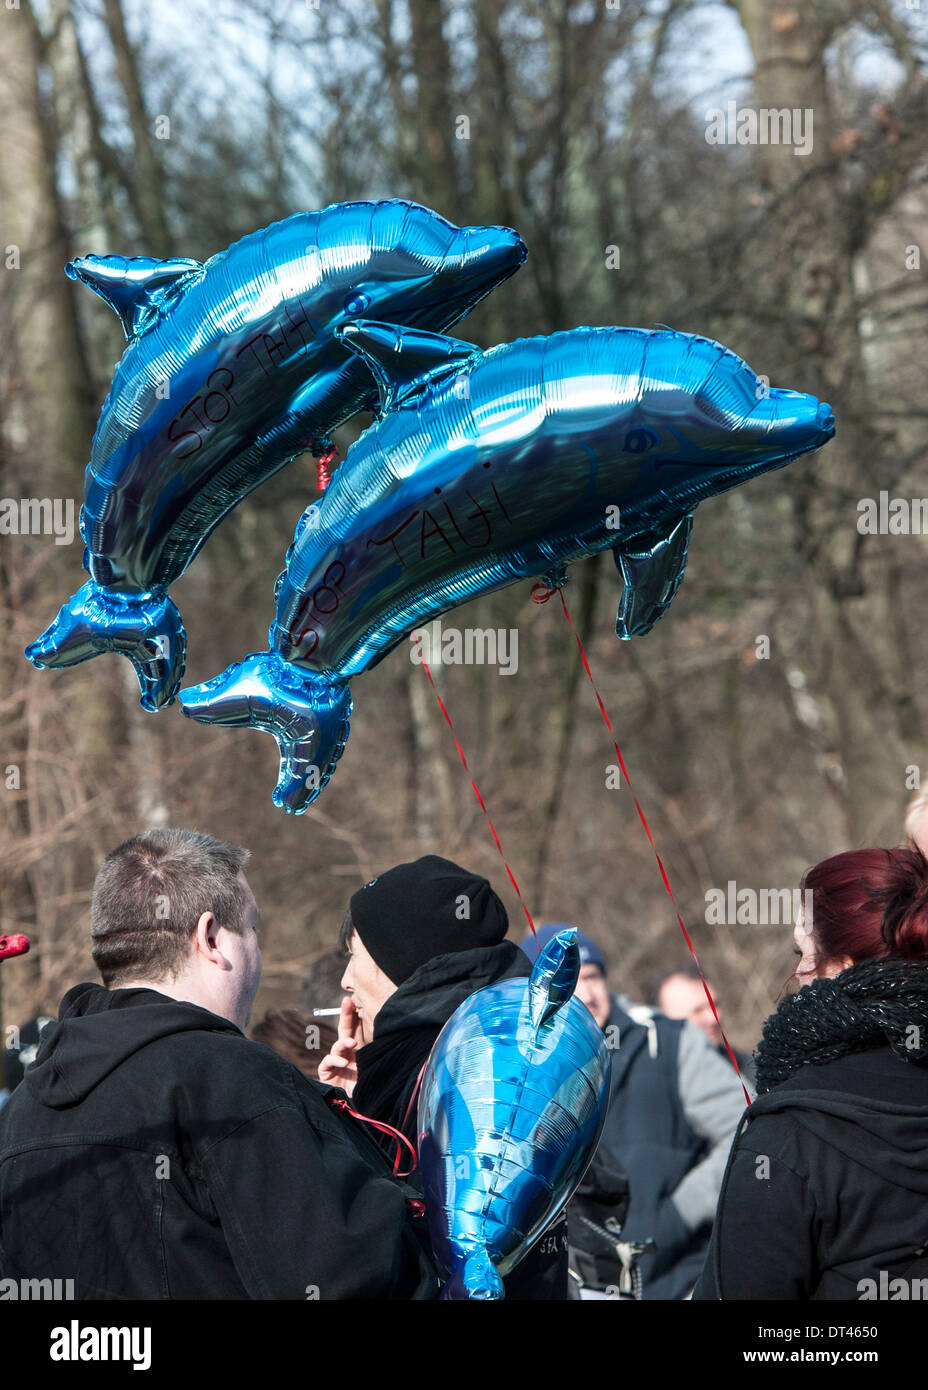 Berlino, Germania. 8 febbraio 2014. Dolphin palloncini galleggiante su manifestanti a una manifestazione contro l'uccisione di delfini nel Taiji (Giappone), che è stato organizzato da diritti degli animali gruppo WDSF, a Berlino. Secondo la polizia, circa un migliaio di persone hanno manifestato contro la uccisione di delfini fuori della costa giapponese di fronte all'ambasciata giapponese a Berlino. . Foto: PAOLO ZINKEN/DPA - NESSUN SERVIZIO DI FILO/KEIN BILDFUNK- Credito: dpa picture alliance/Alamy Live News Foto Stock